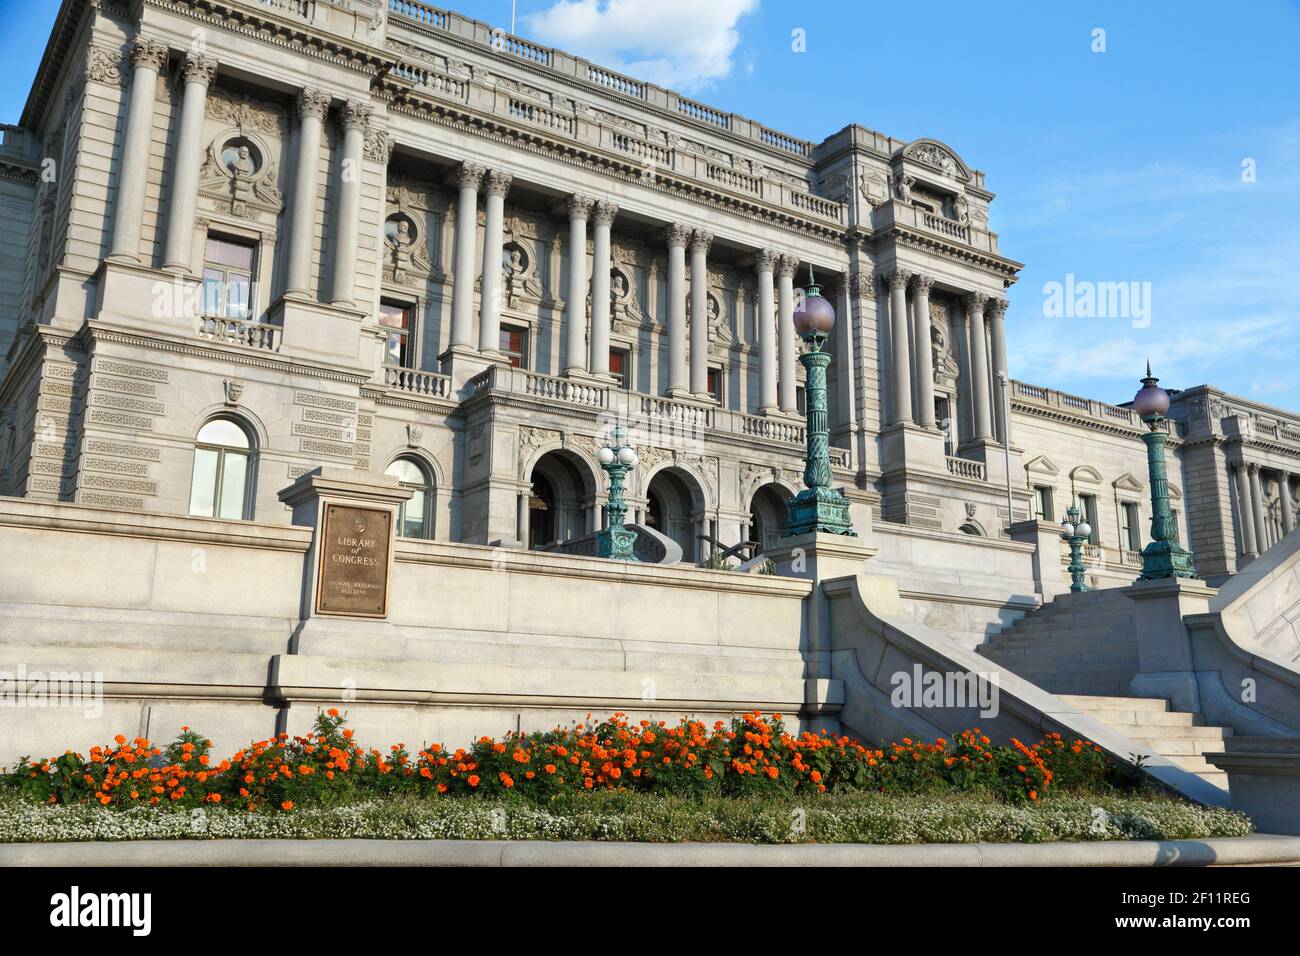 Library of Congress building, exterior, Washington DC Stock Photo